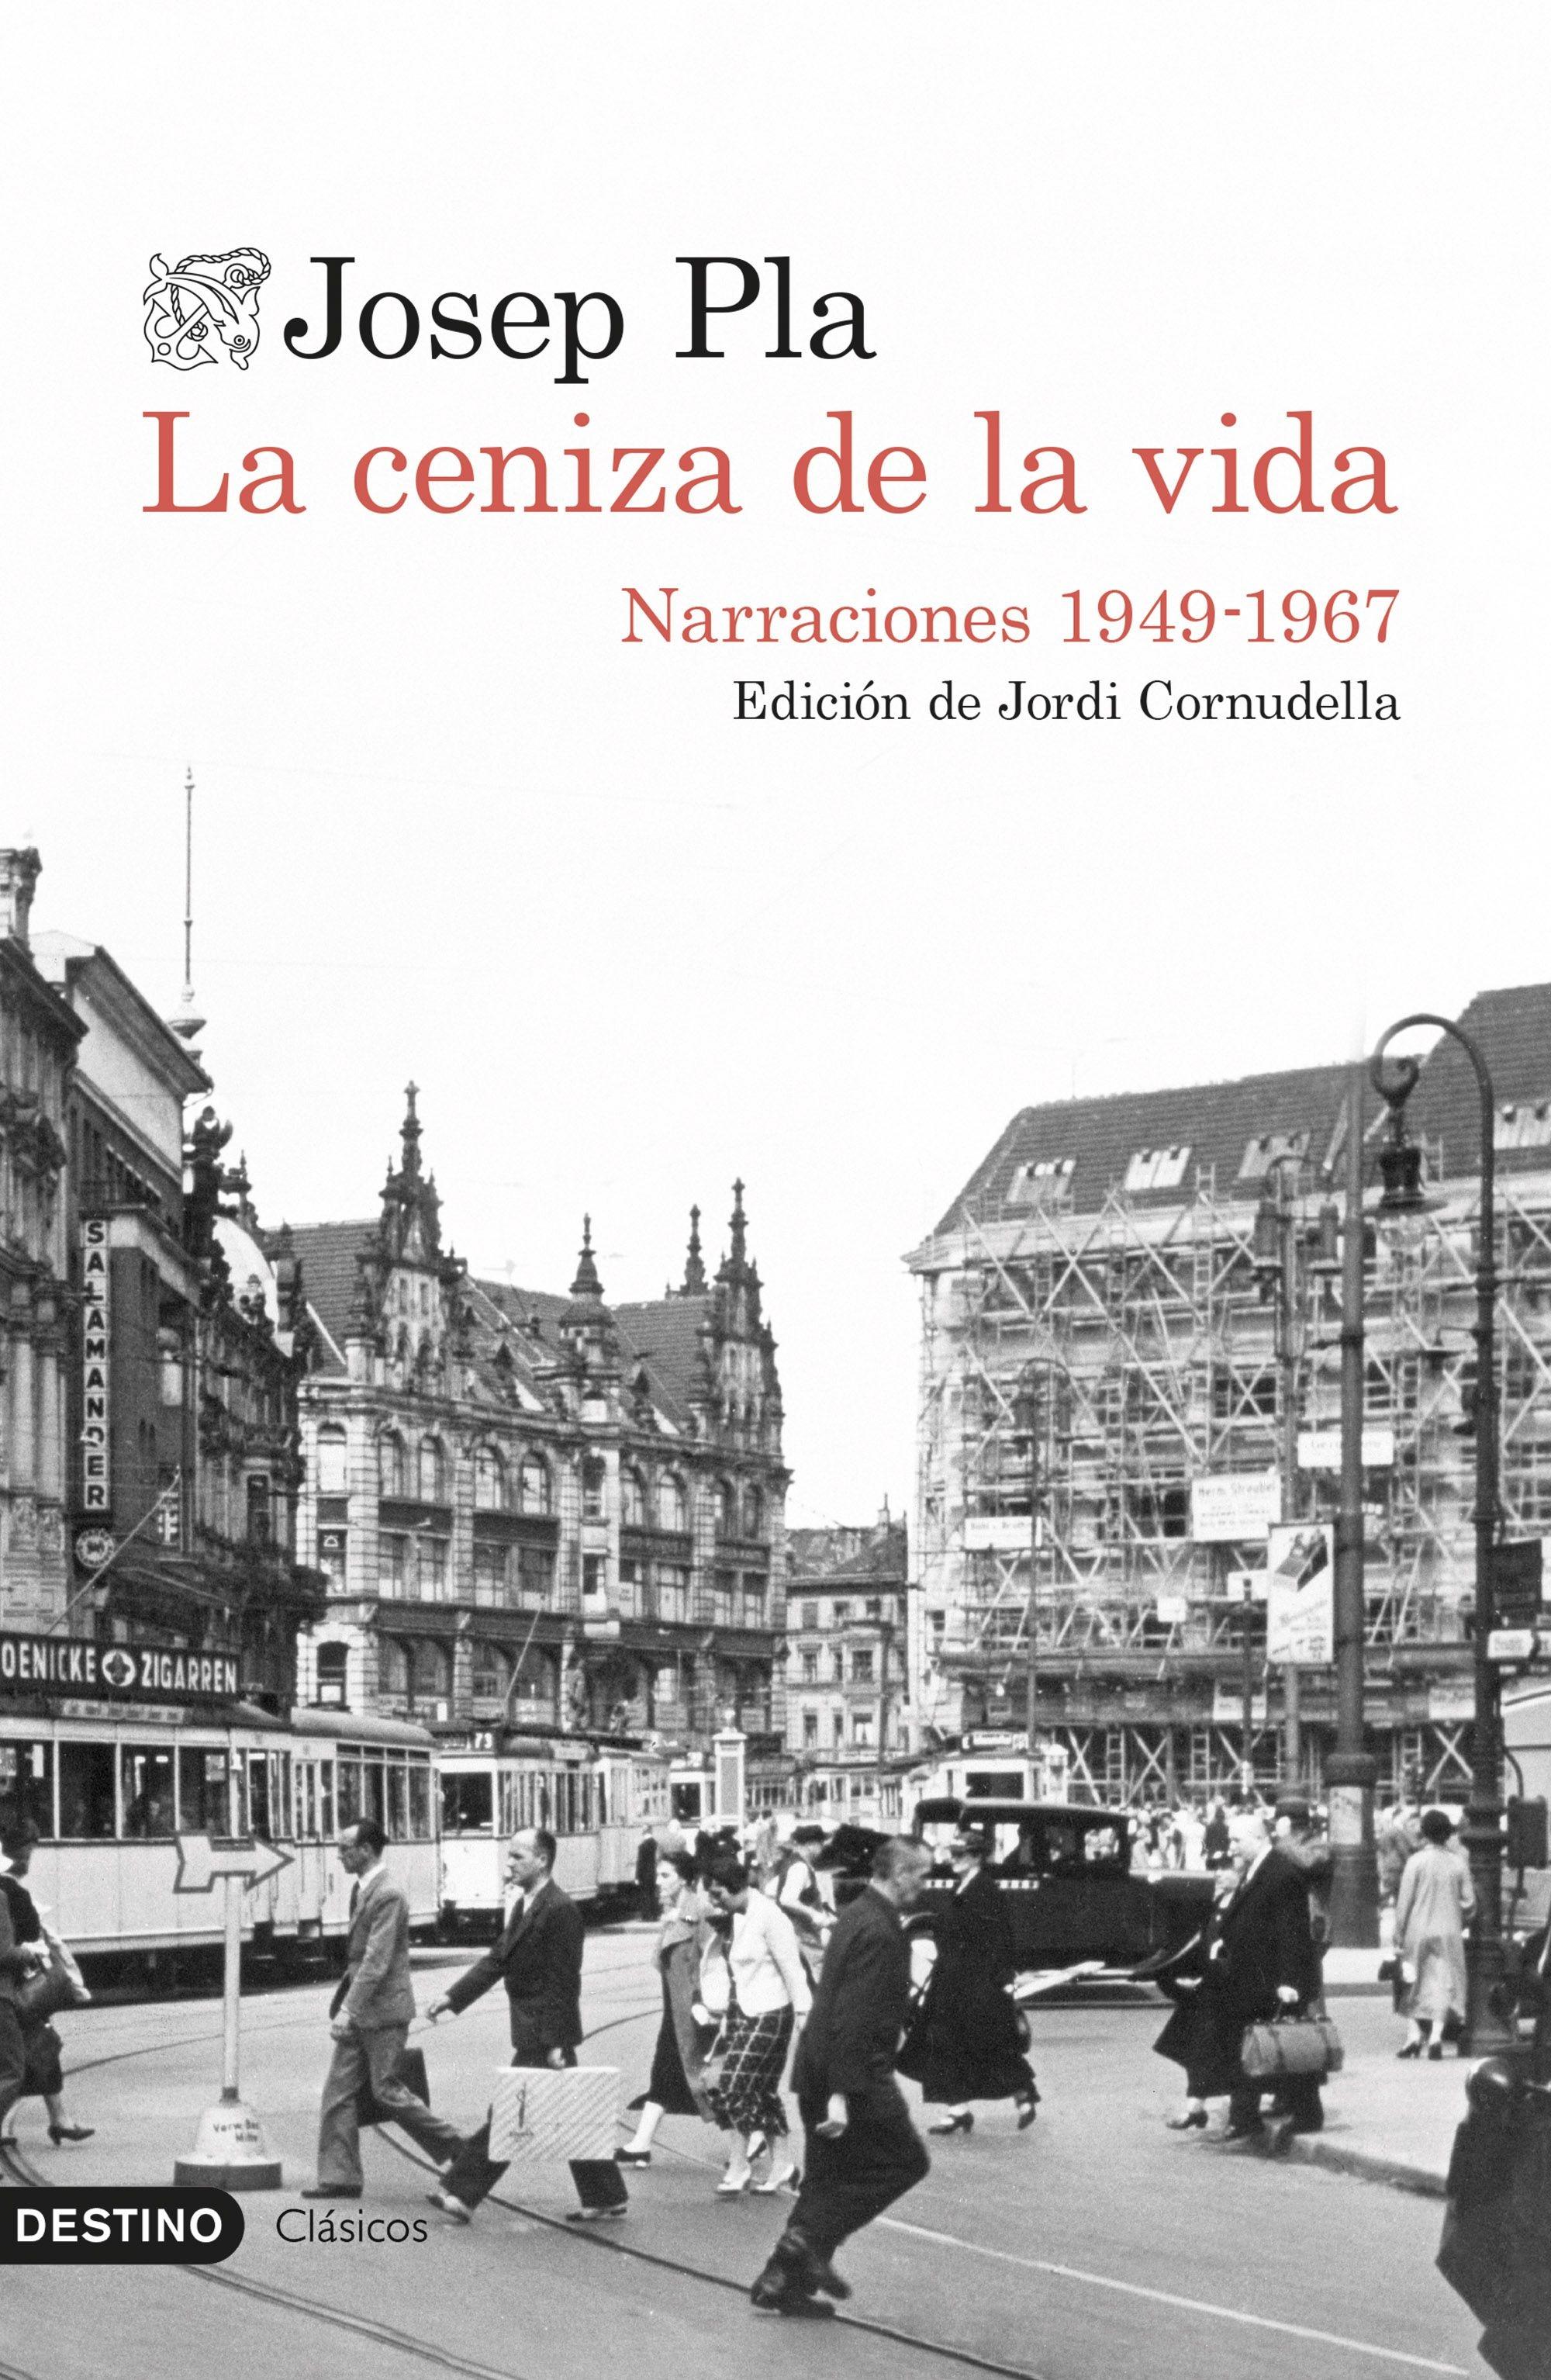 Ceniza de la vida, La "Narraciones 1949-1967"